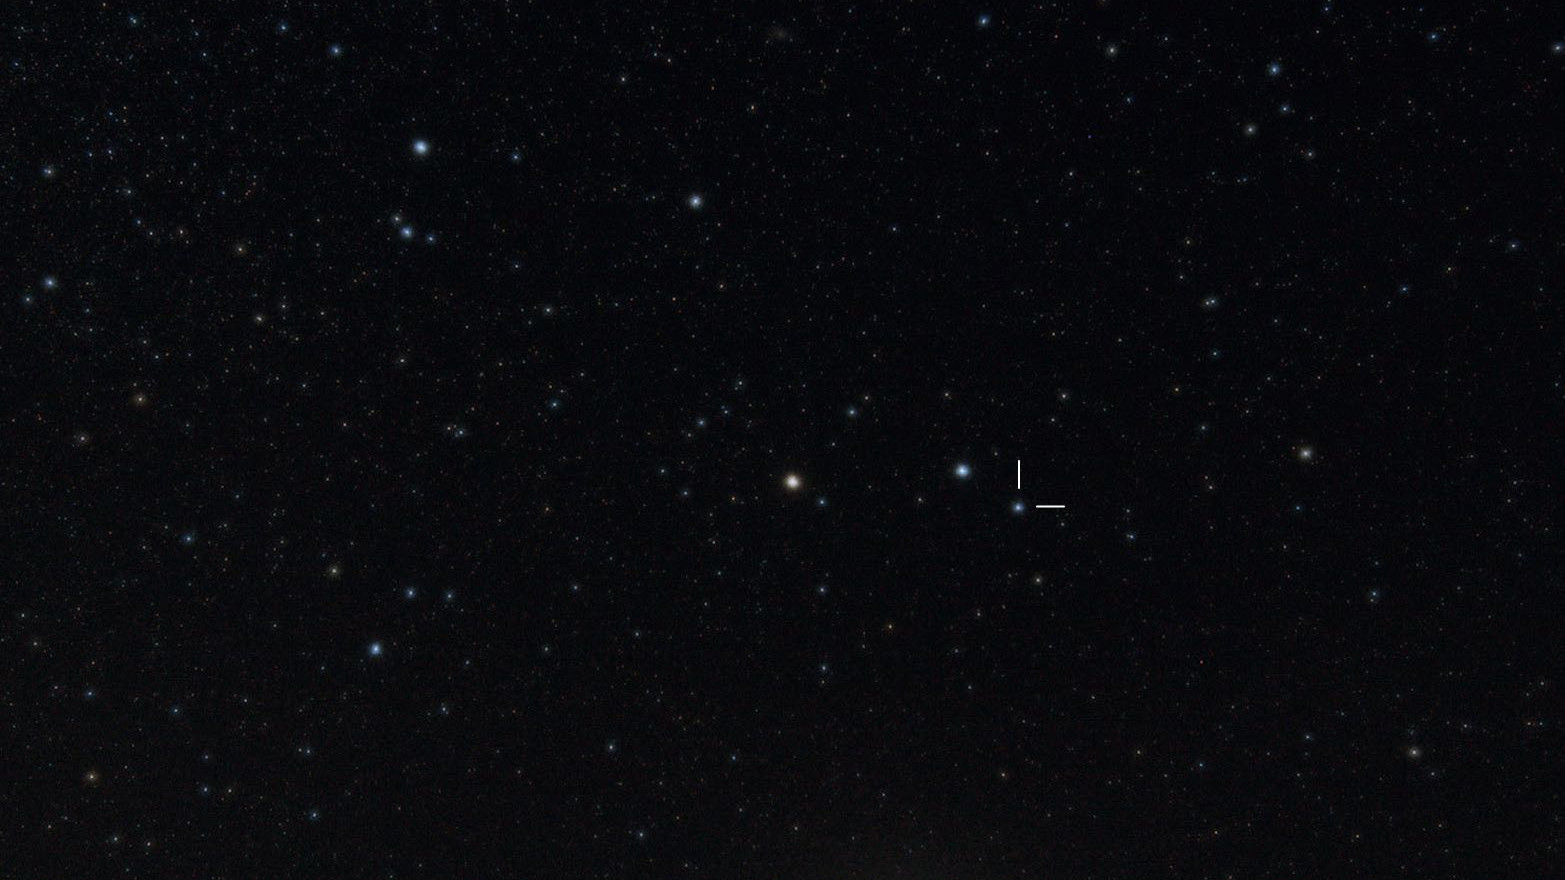 γ Arietis se situe dans la corne gauche de la constellation du Bélier. Bernhard Hubl